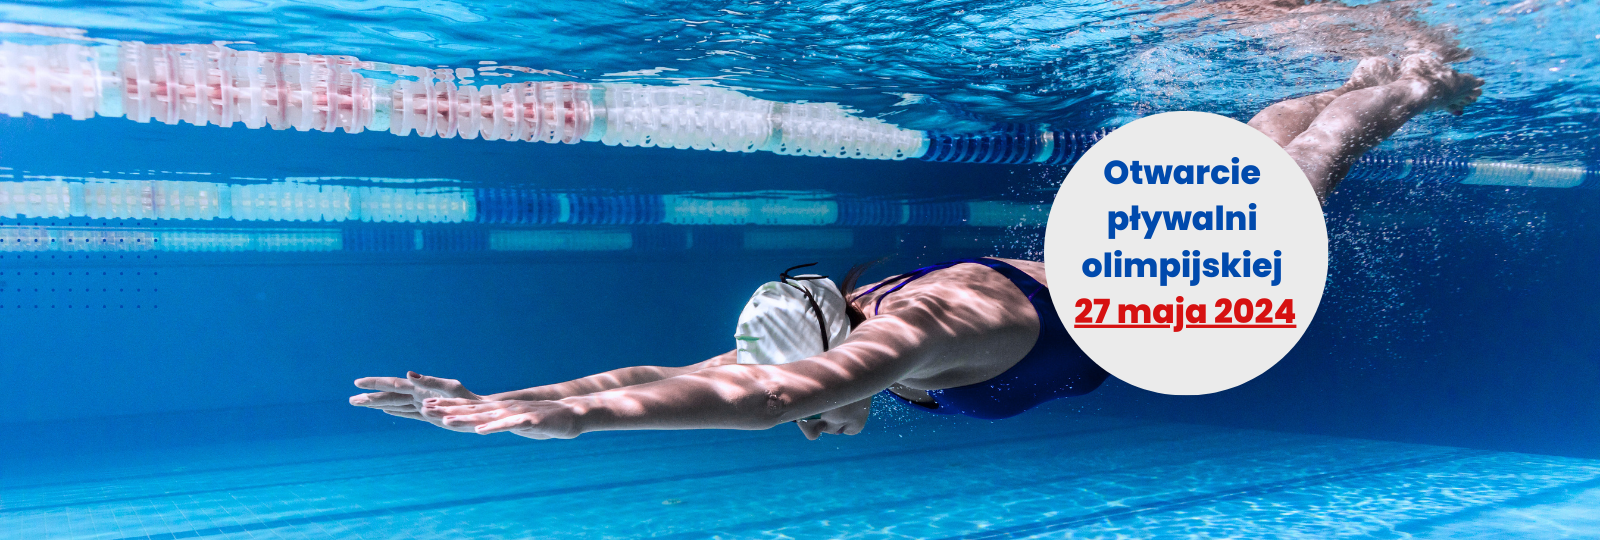 Baner: Otwarcie pływalni olimpijskiej 2024